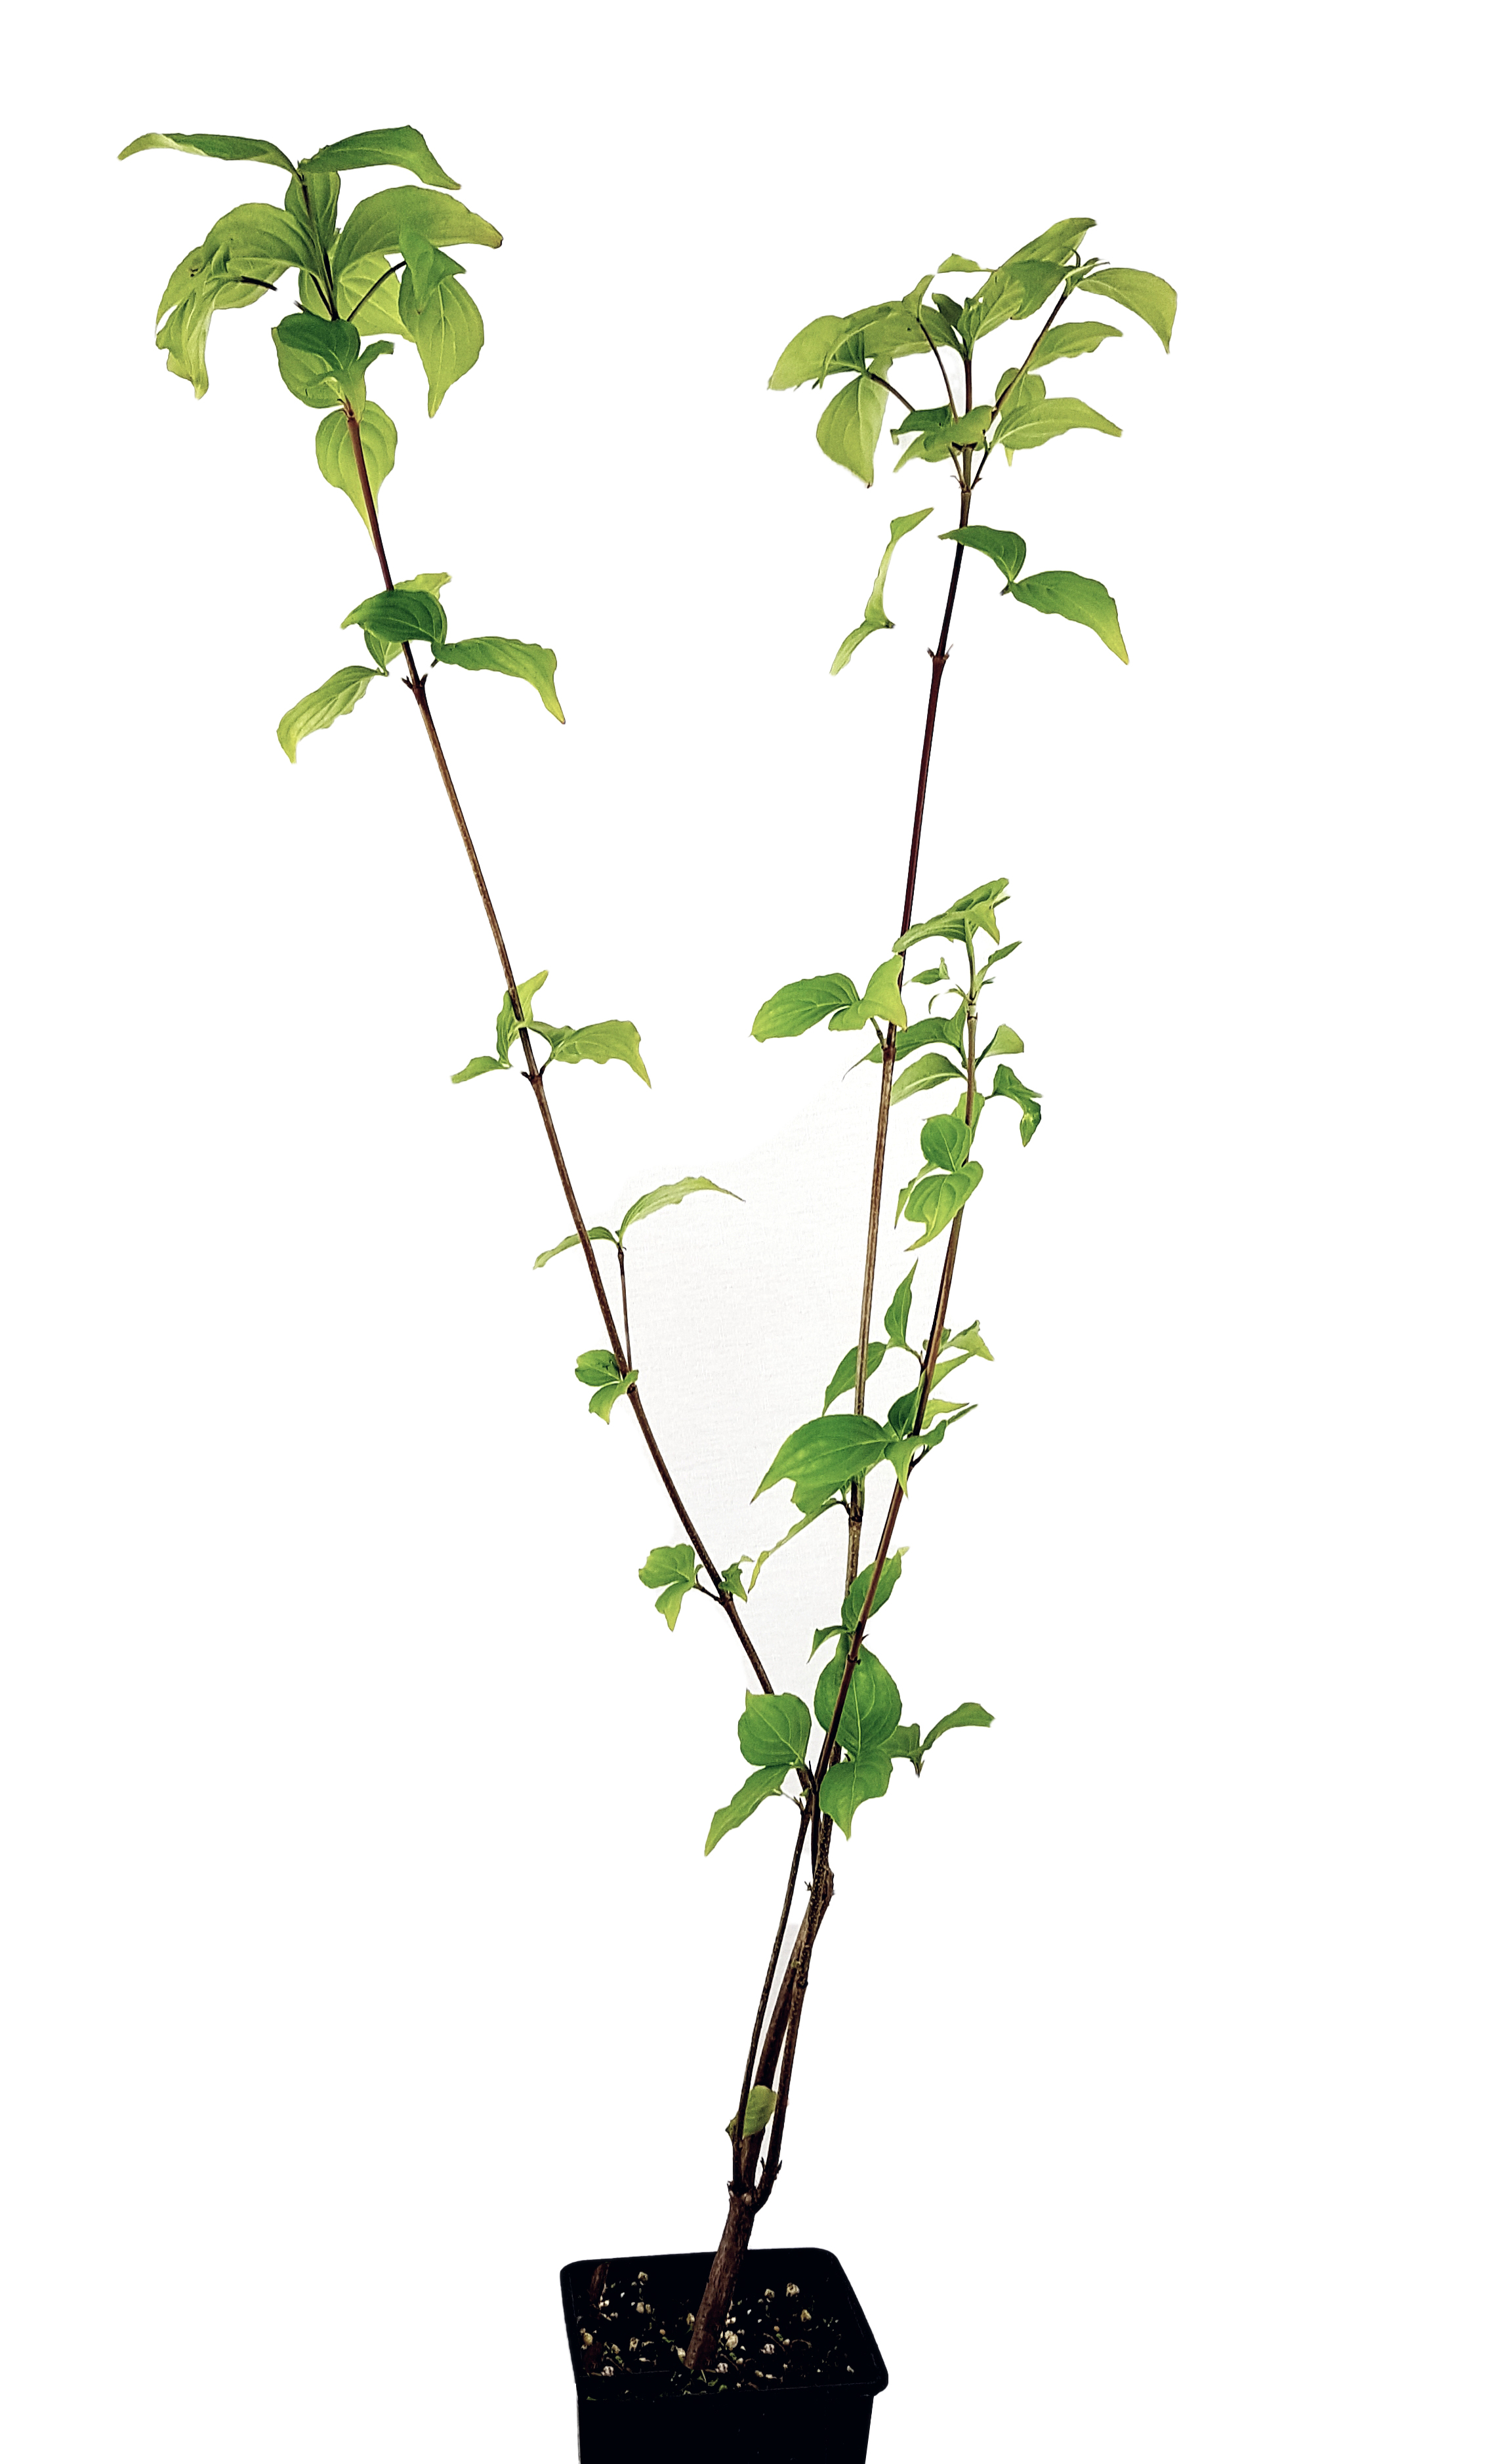 Seedeo® Asiatischer Blütenhartriegel Cornus kousa var. chinensis ca. 60 cm - 80 cm hoch